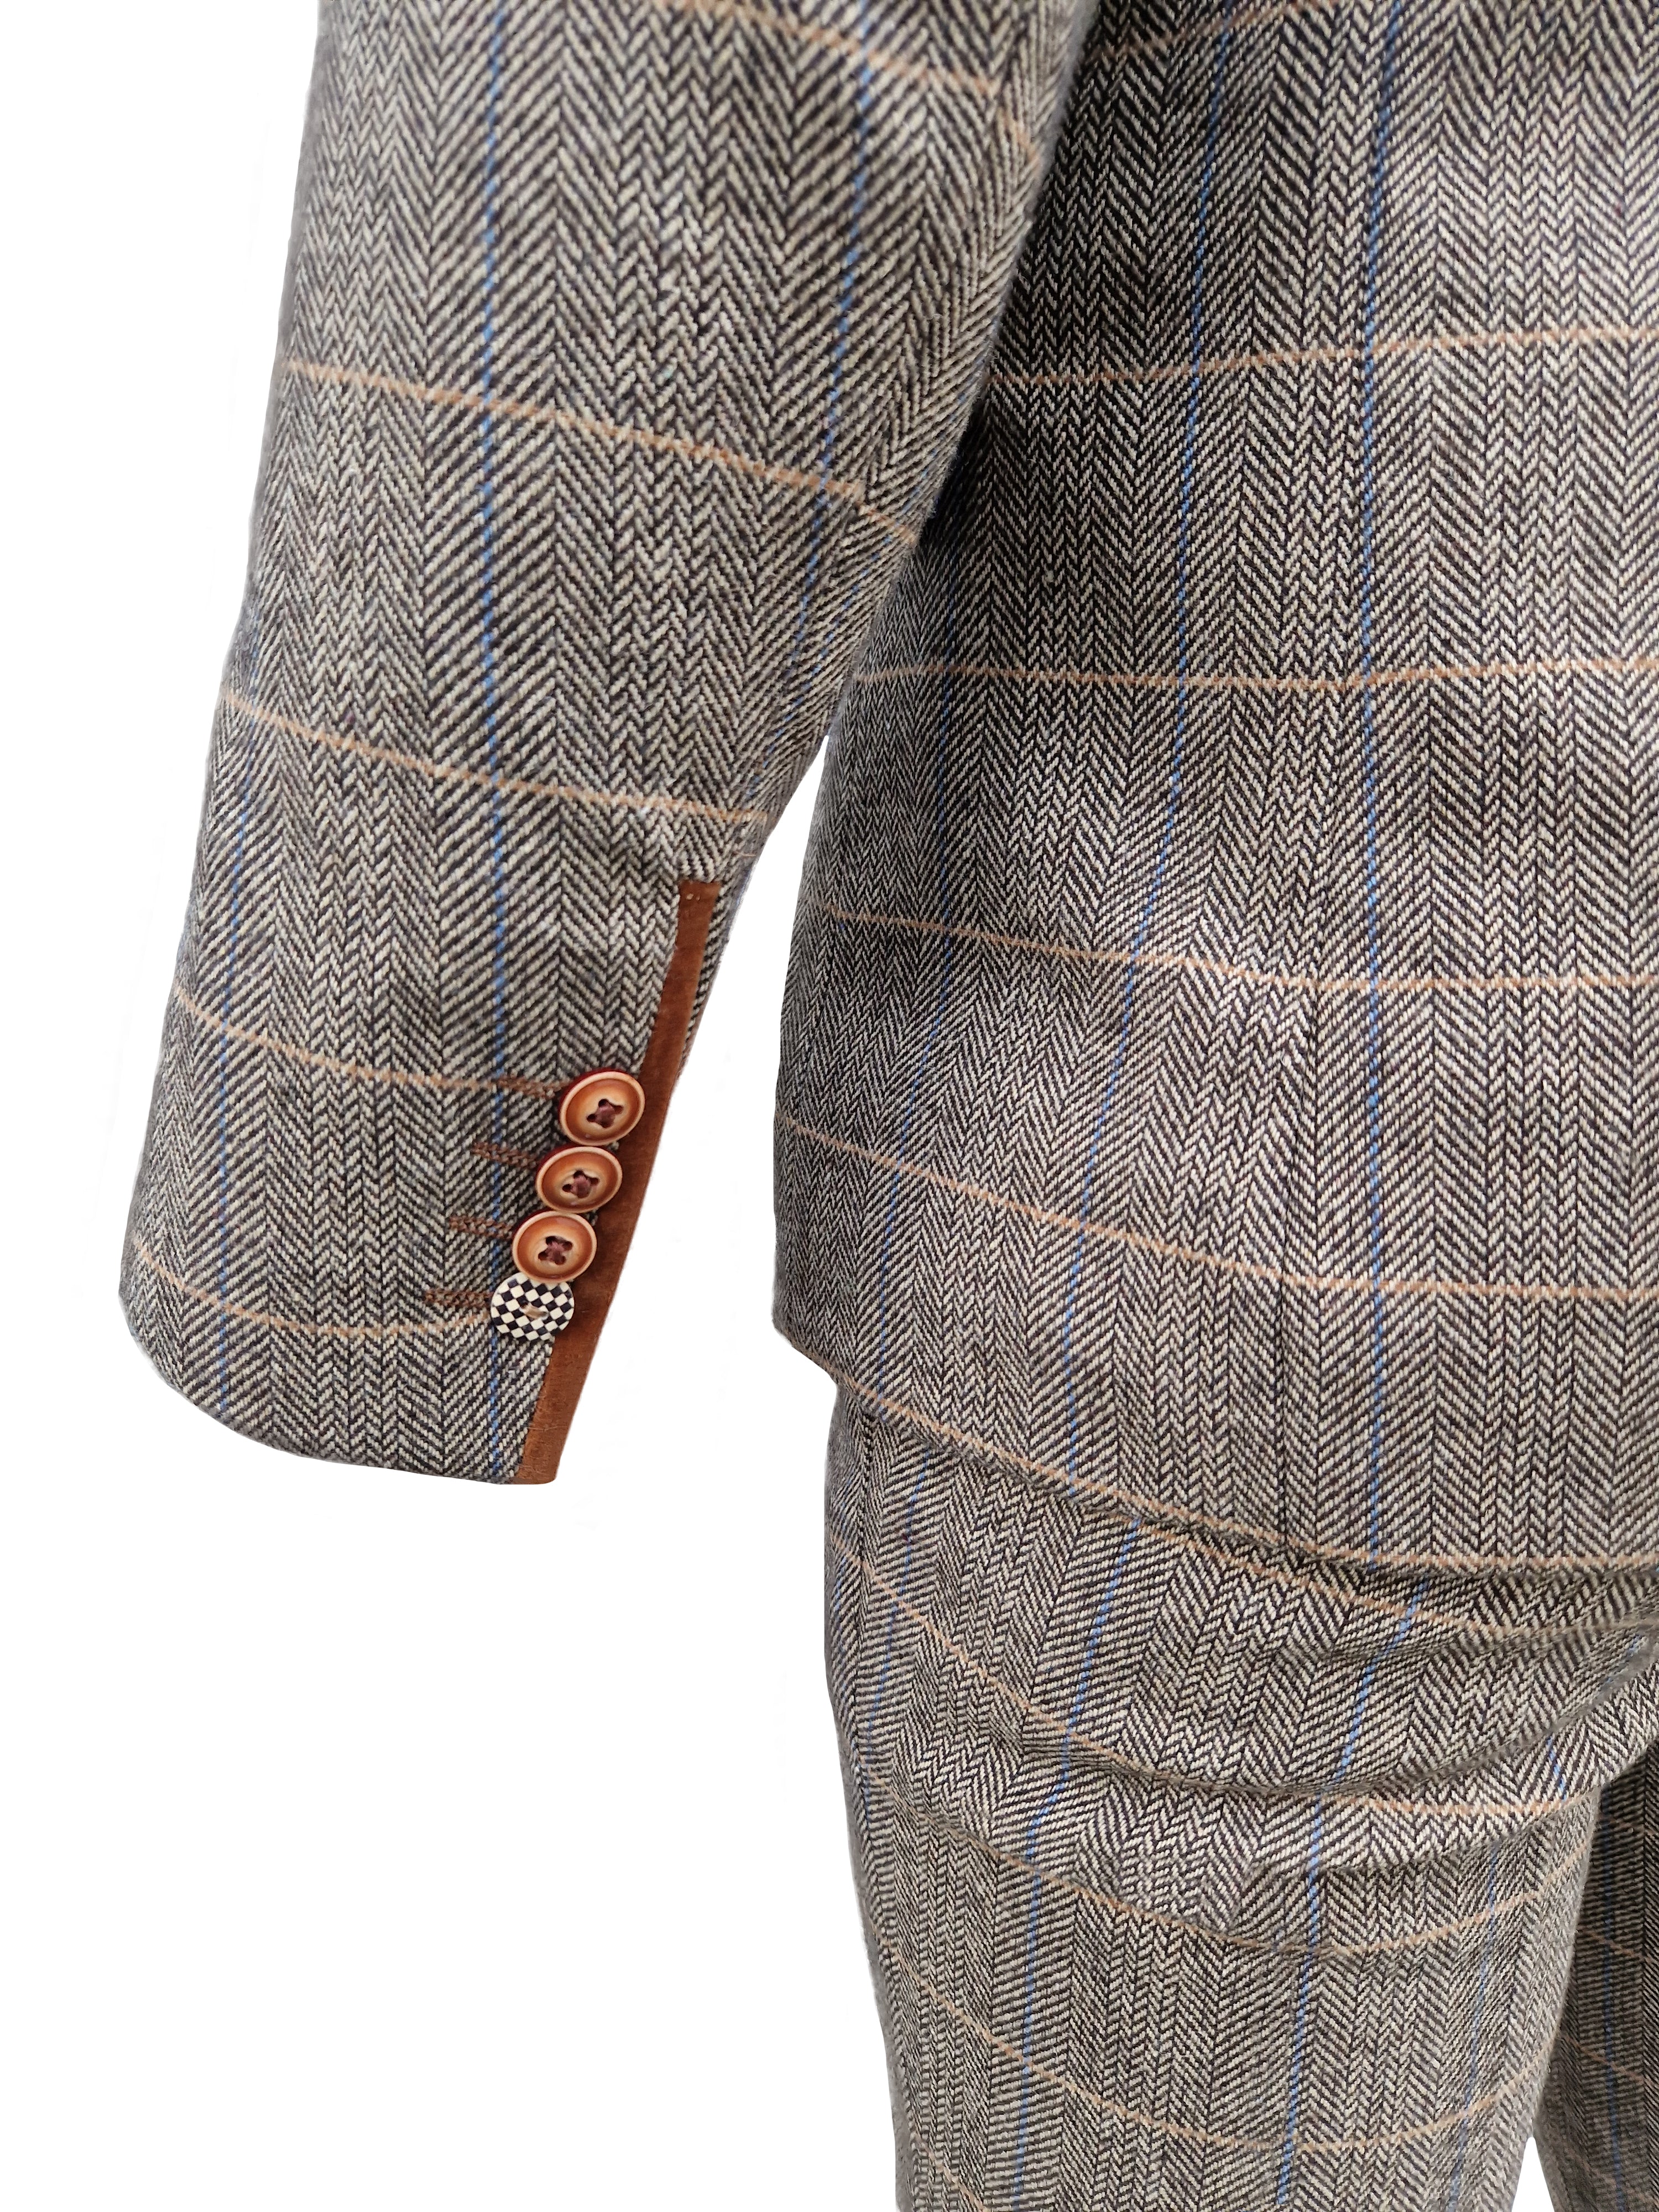 Mix and match - 3-piece Men's Suit Herringbone Brown/Navy